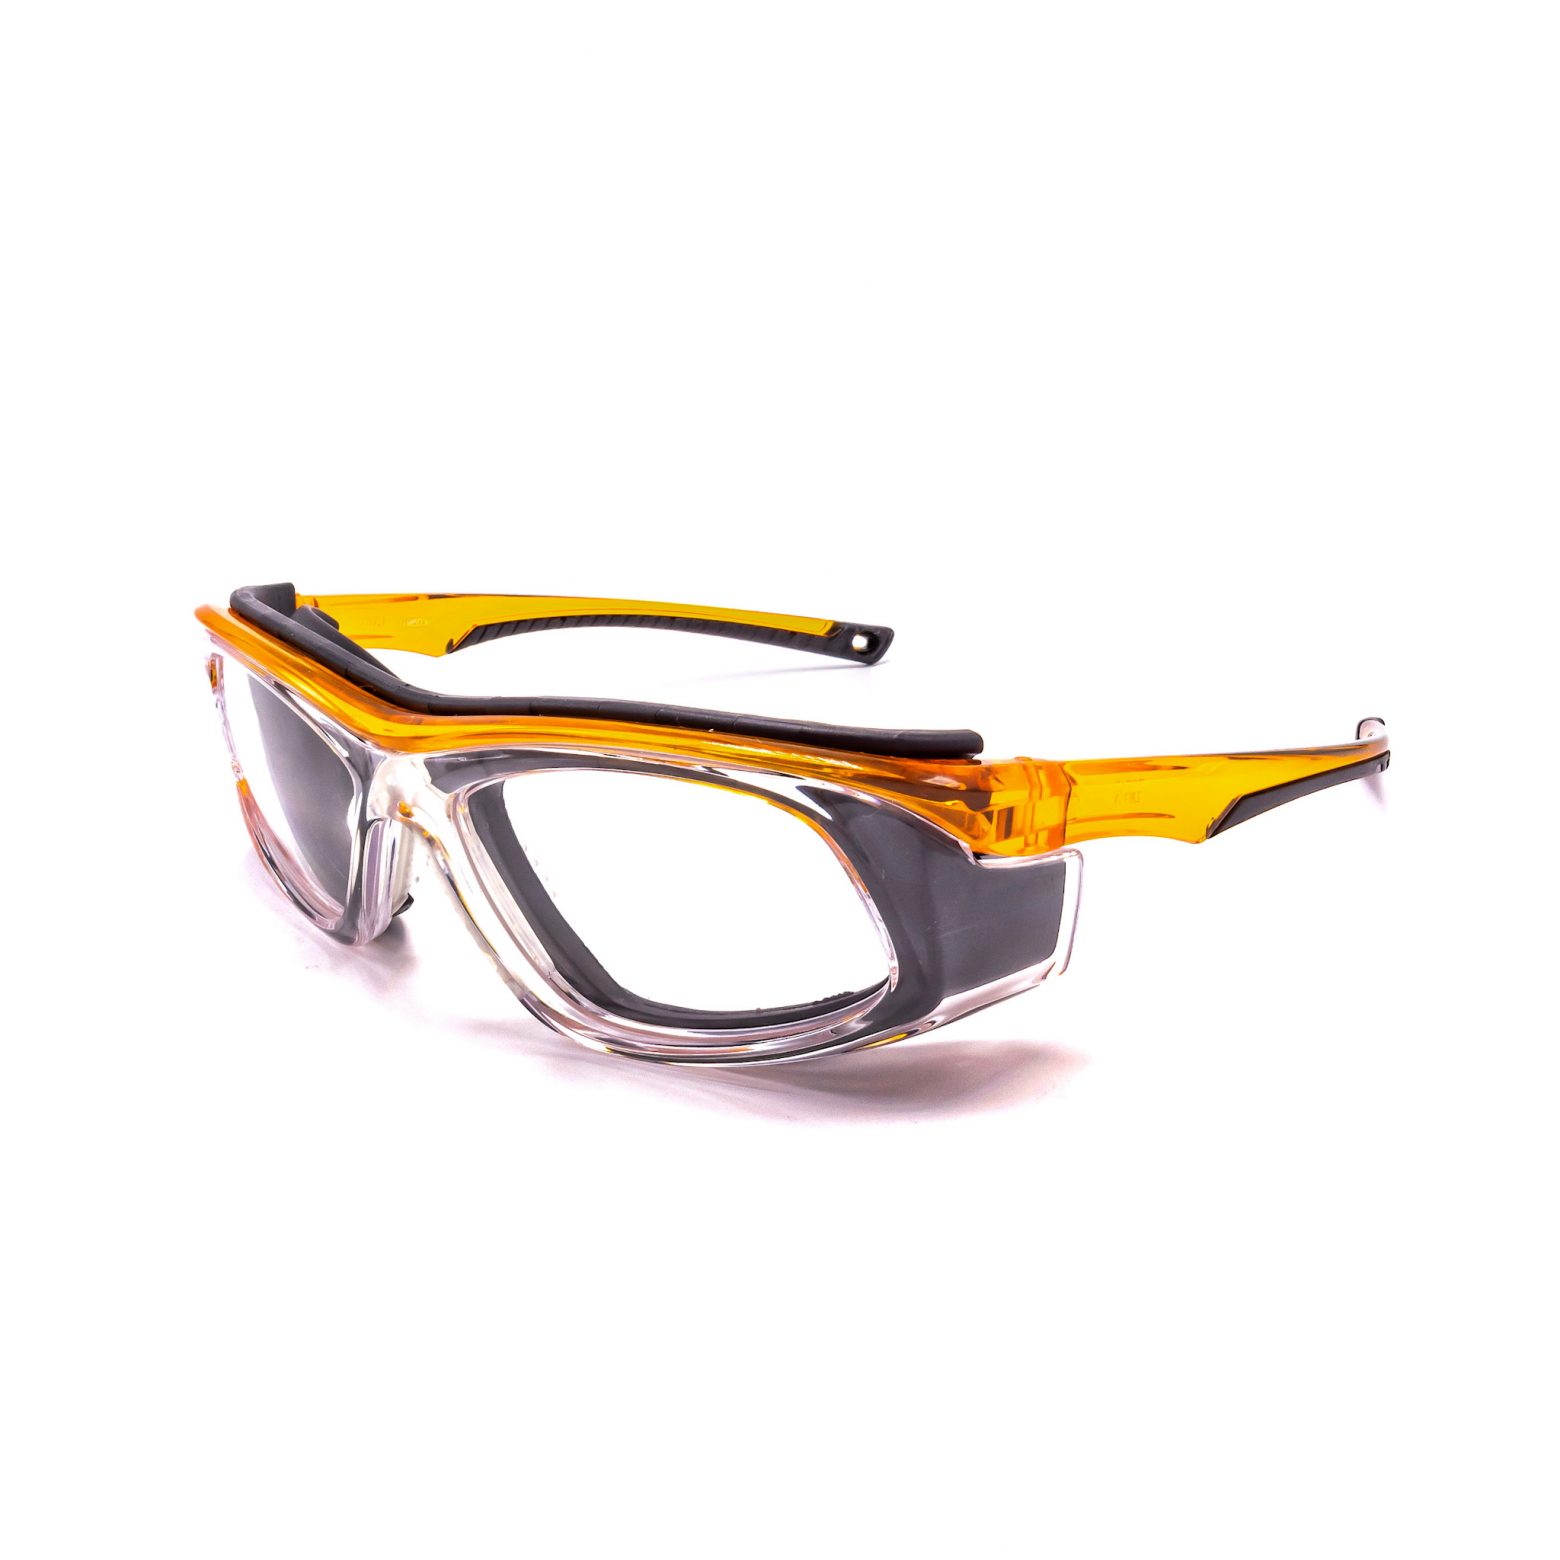 Prescription Safety Glasses - 100+ ANSI RX Safety Glasses (On Sale)